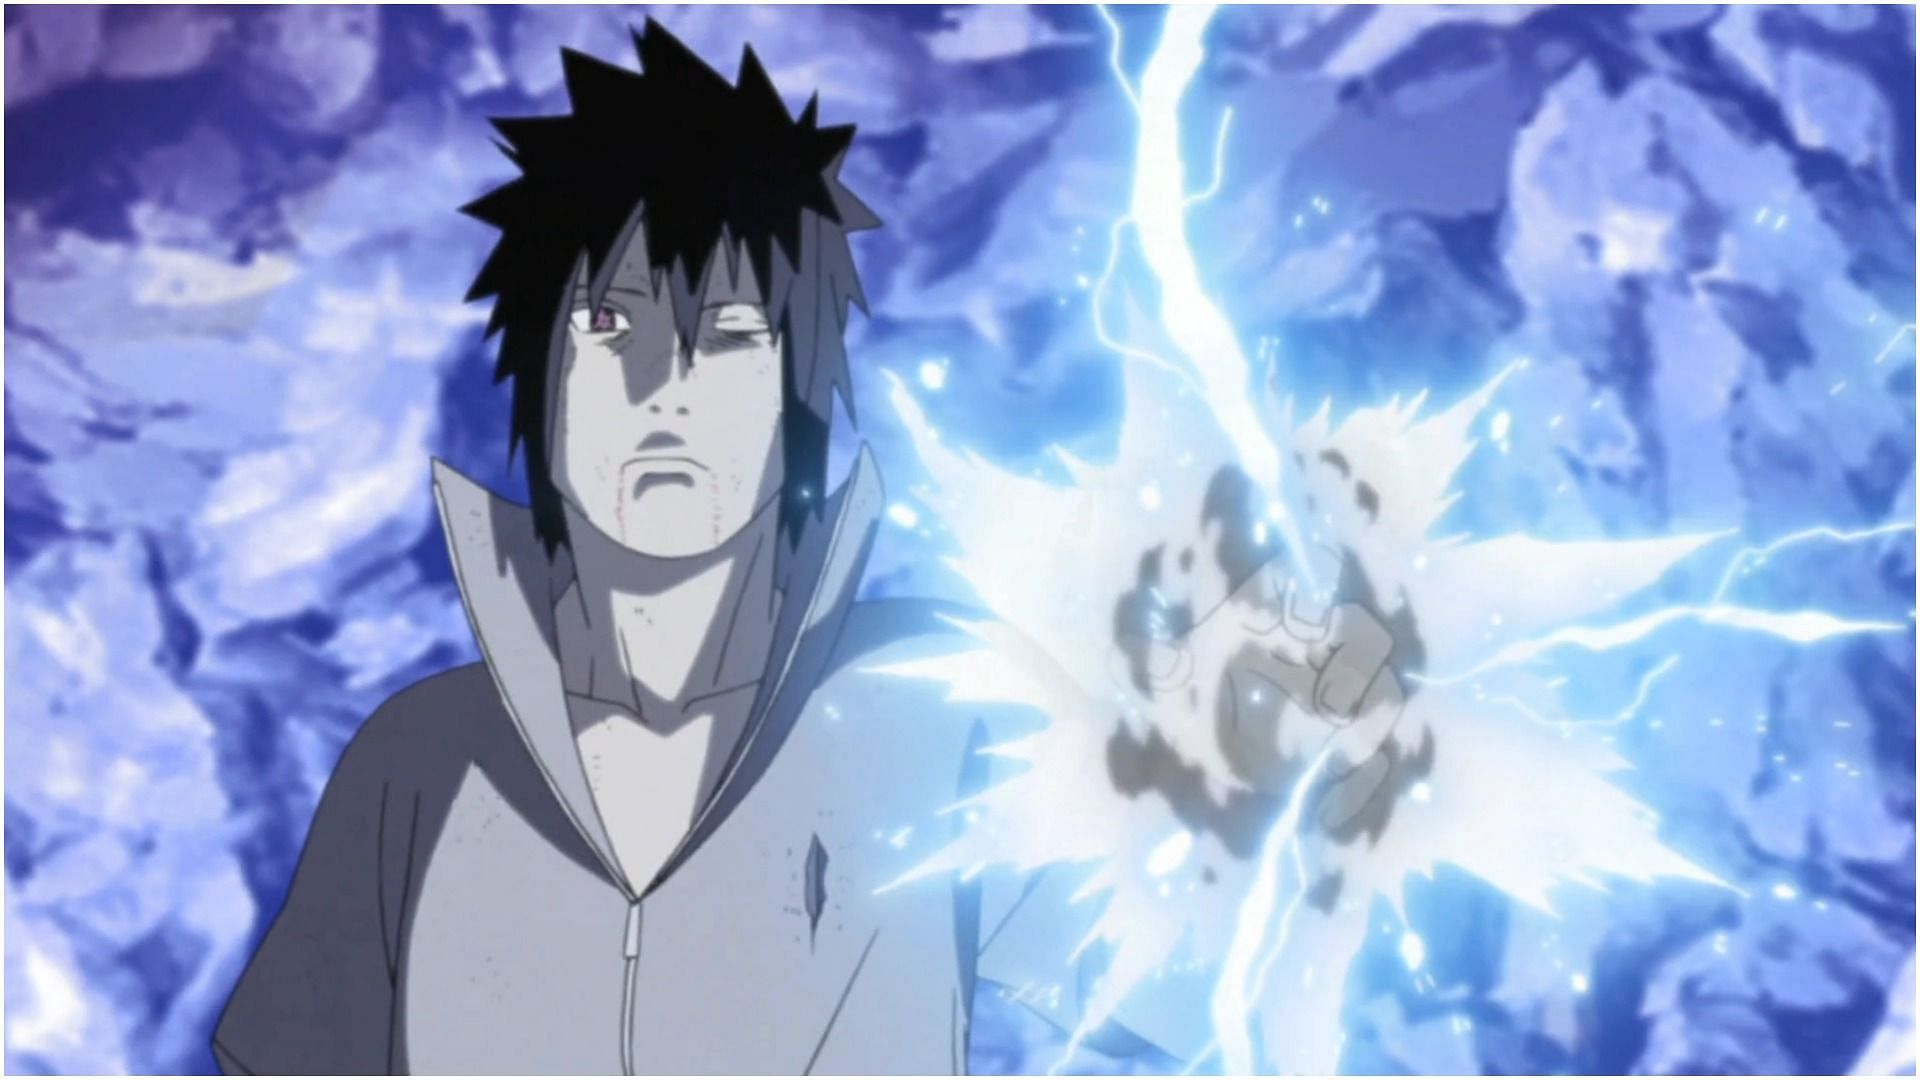 Sasuke Uchiha as seen in Naruto (Image via Spotskeeda)